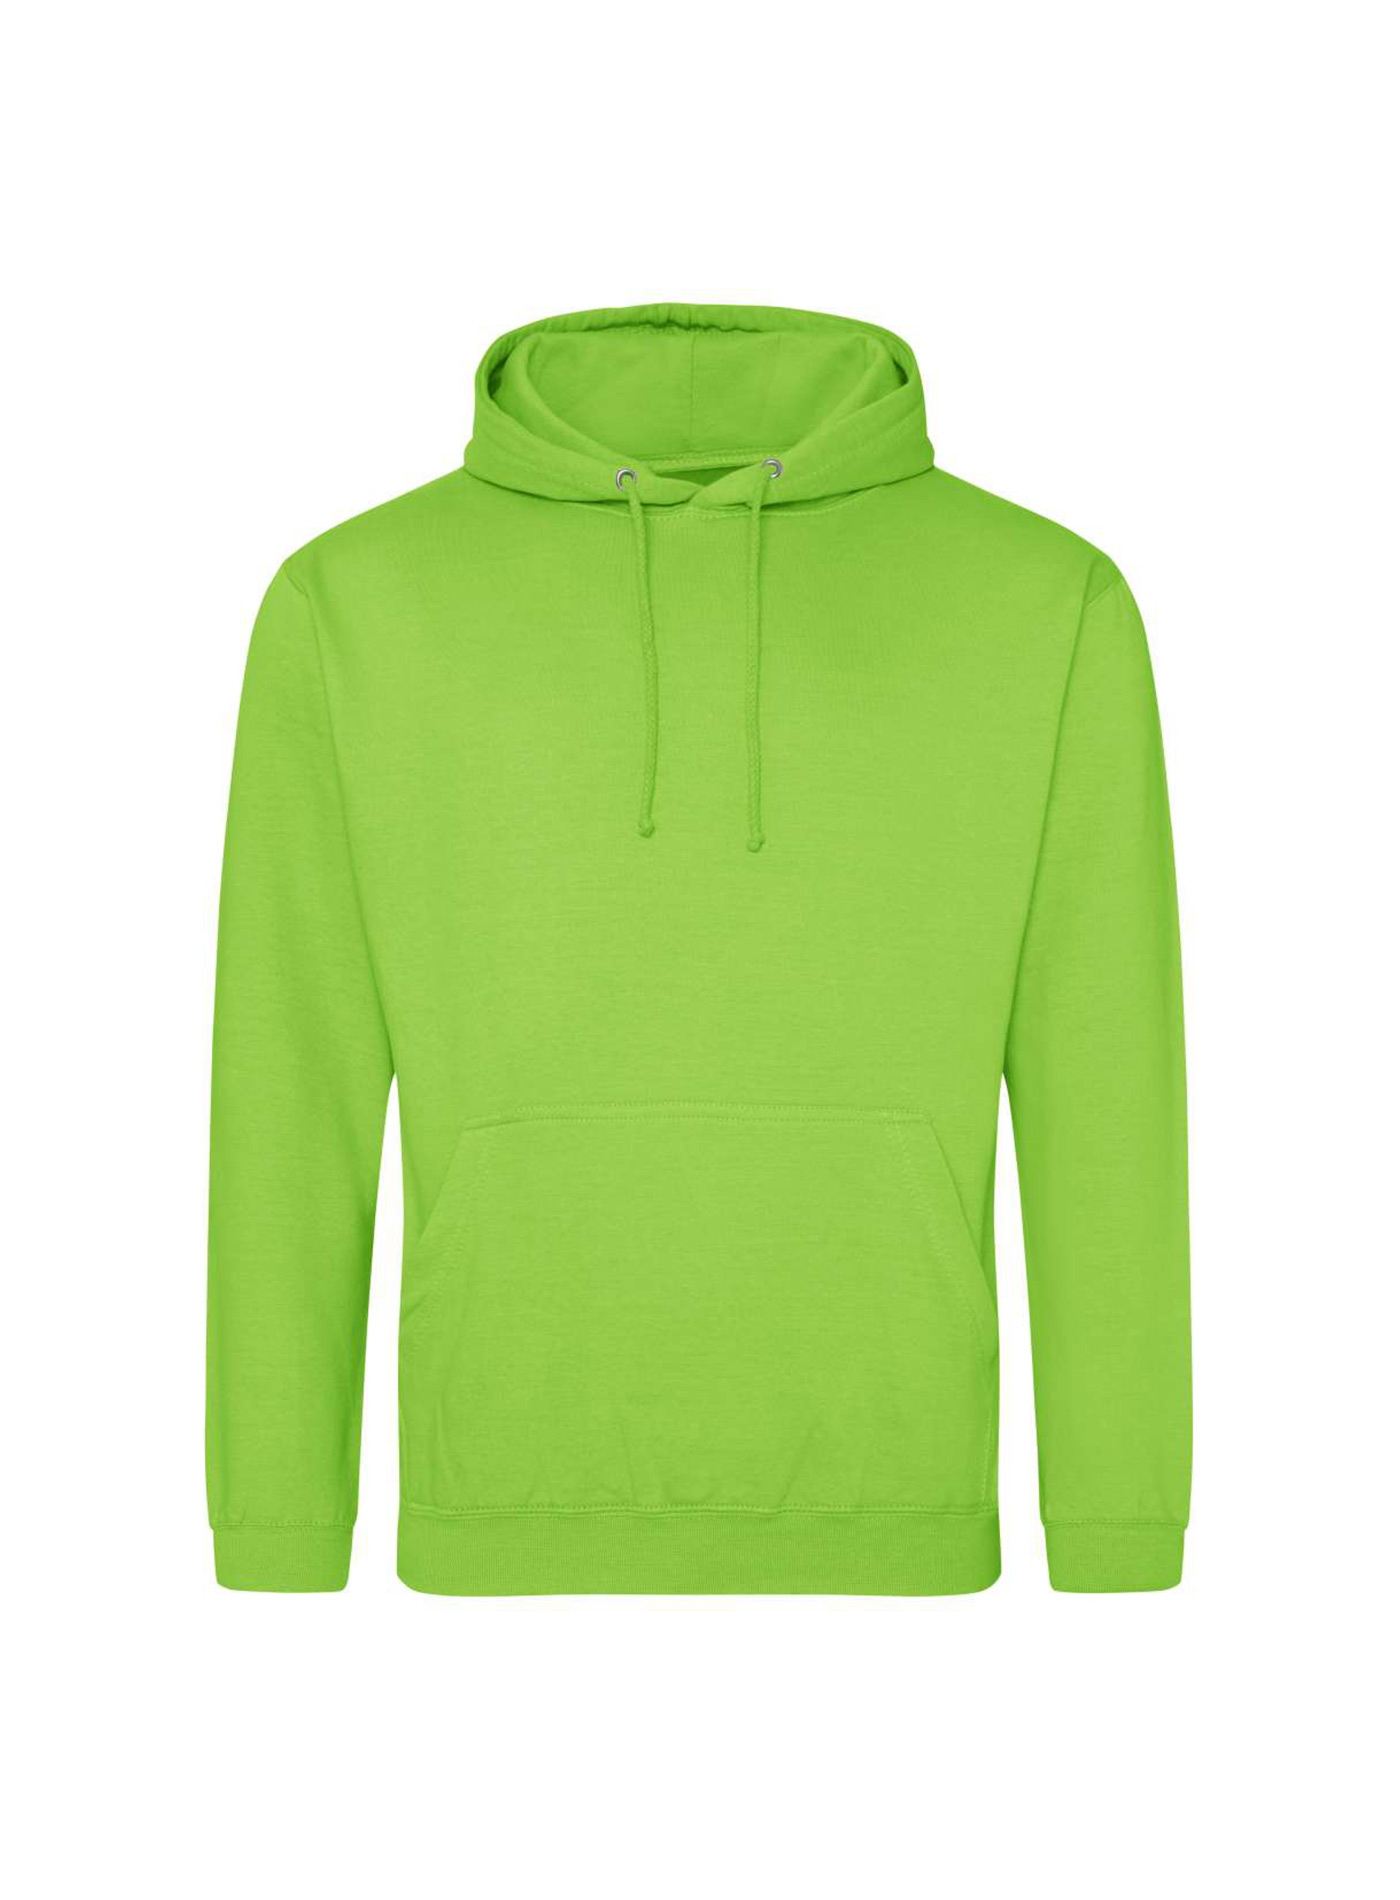 Mikina s kapucí unisex Just Hoods - Neonová zelená L